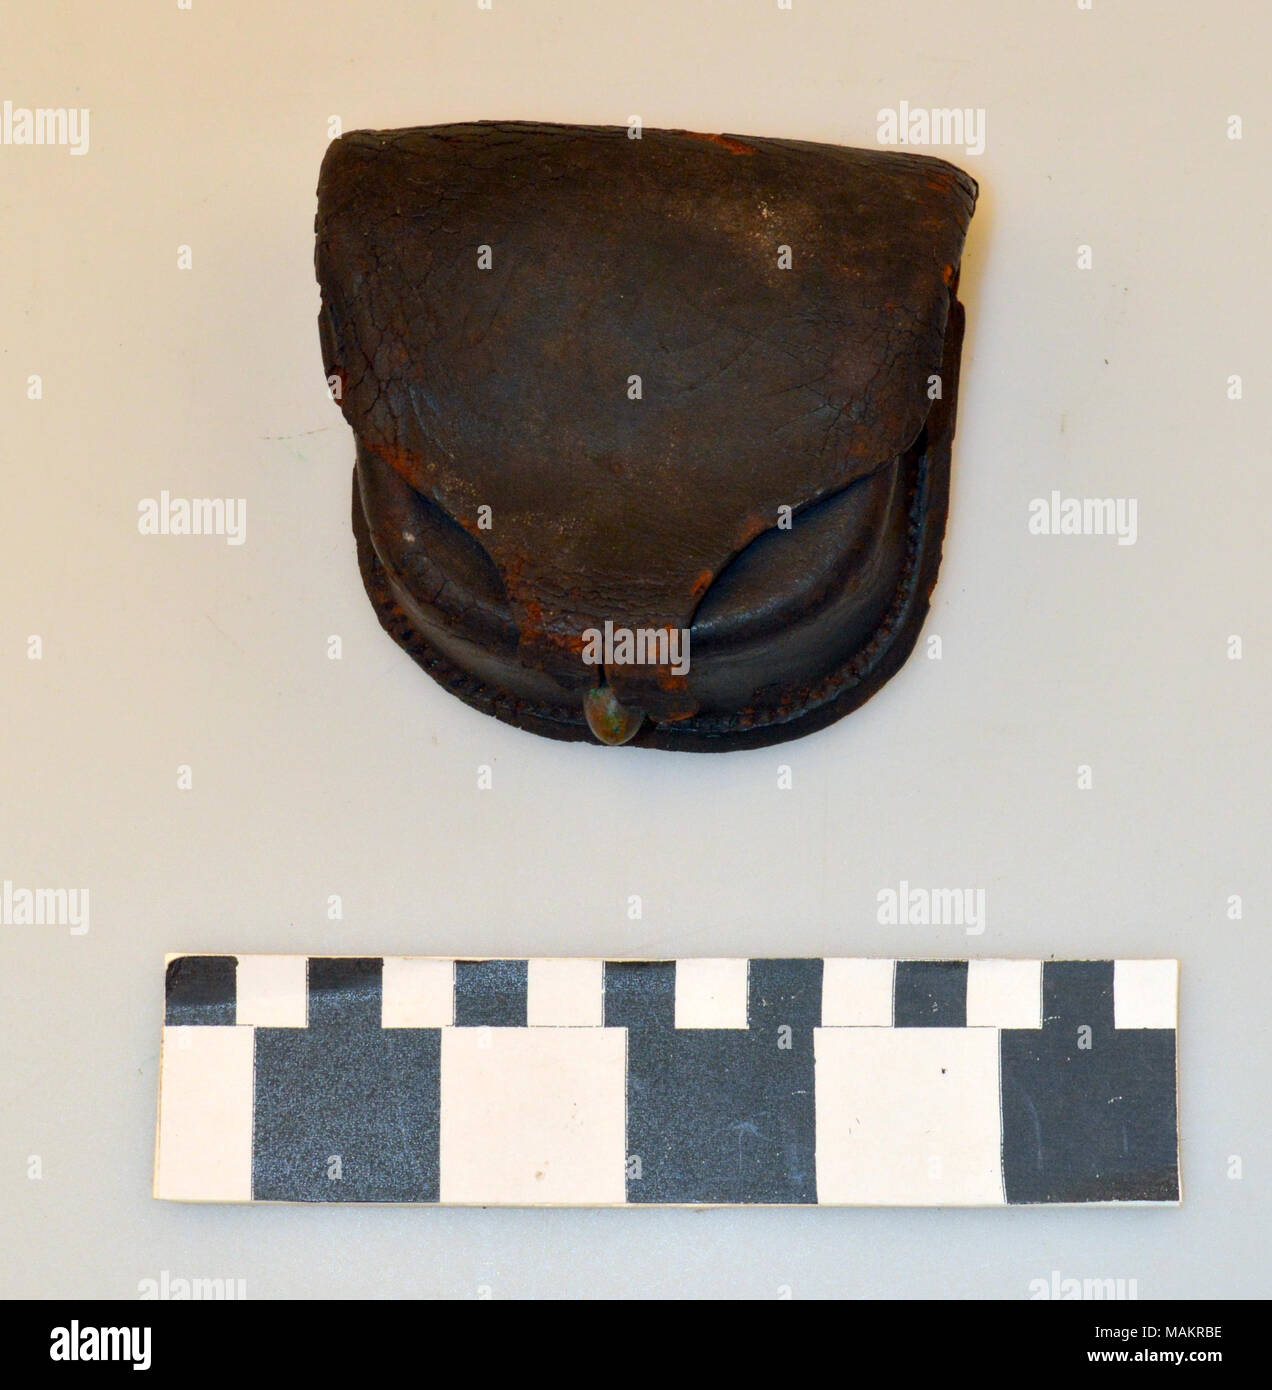 Ein Muster 1850 style cap Tasche für die zündhütchen in schwarzem Leder  Titel: Muster 1850 Bürgerkrieg Percussion Cap Beutel. um 1860  Stockfotografie - Alamy